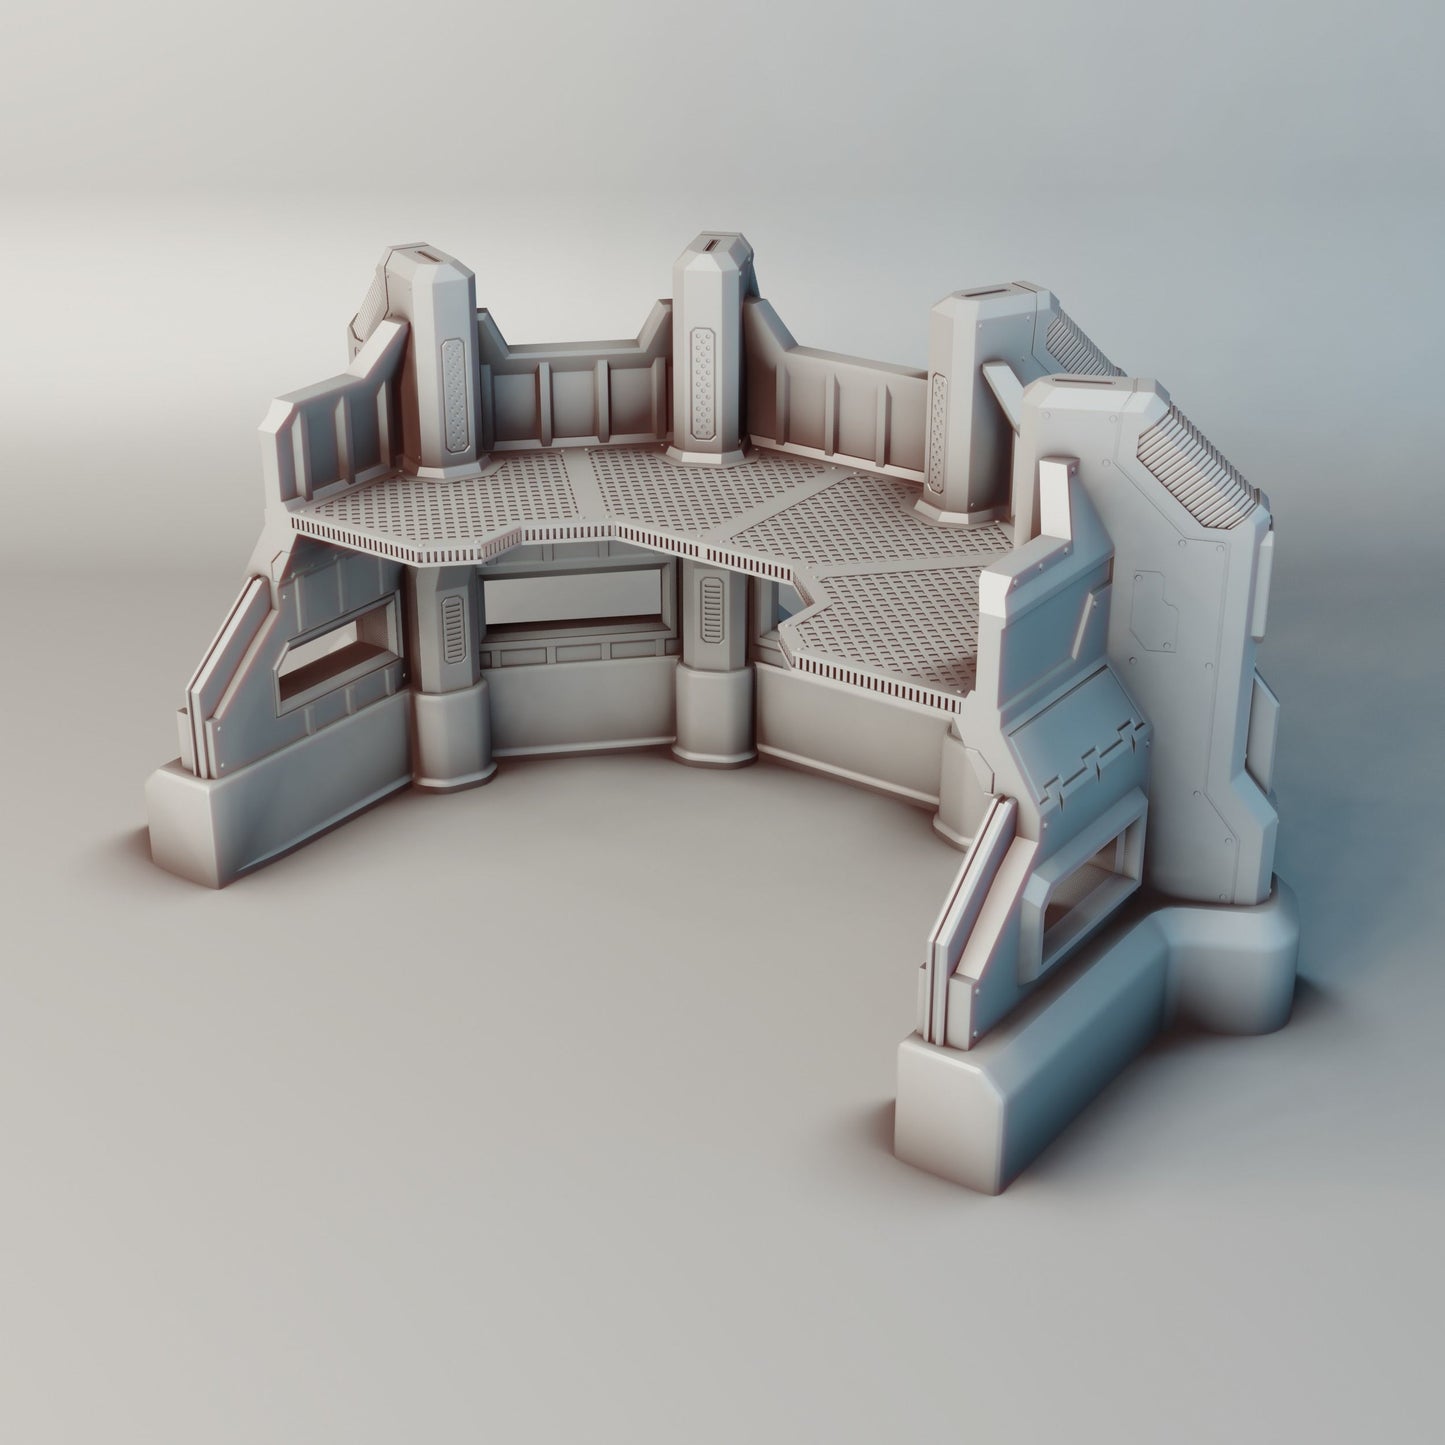 Earthmen Multi-Level Defense Barrier | Miniature Tabletop Scenery | 28mm Scale